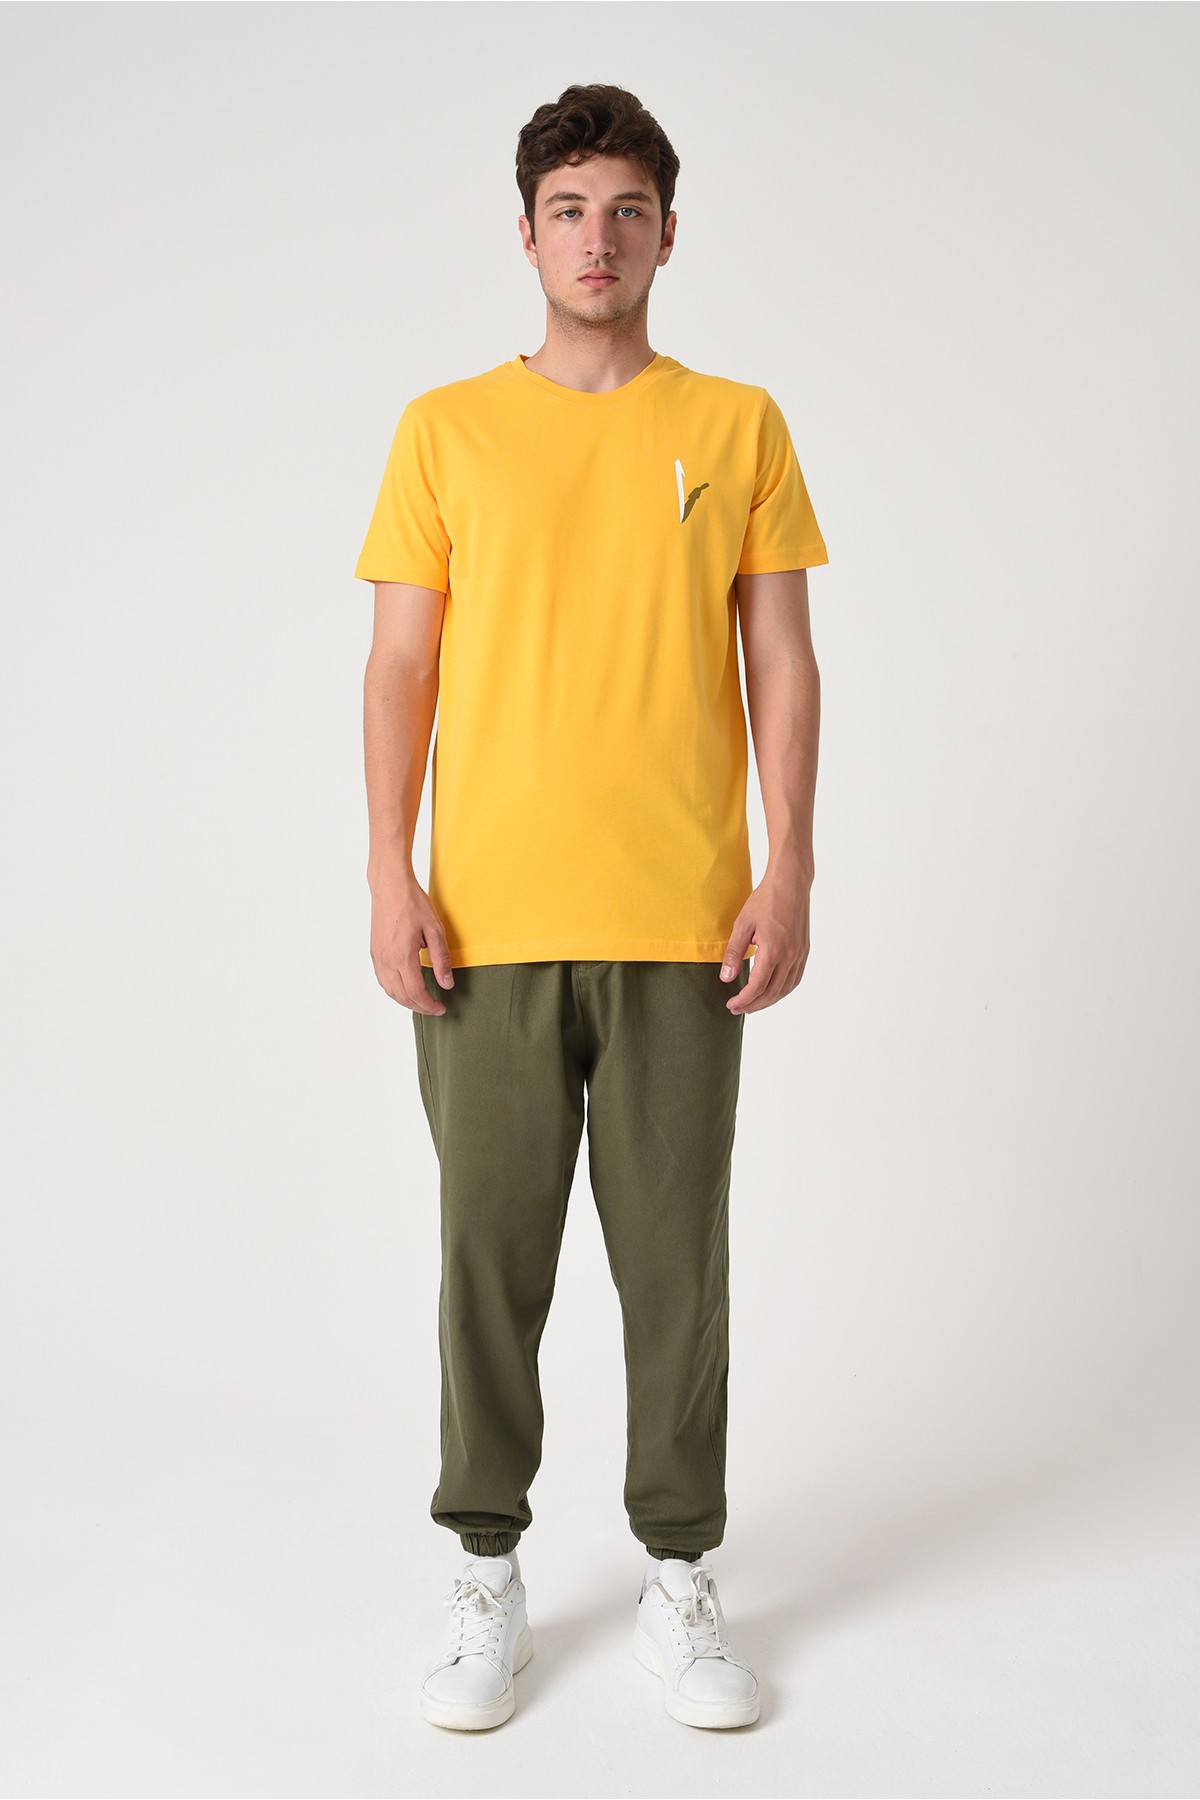 Elif Tasarım Pamuk Bisiklet Yaka Sarı T-shirt 22’